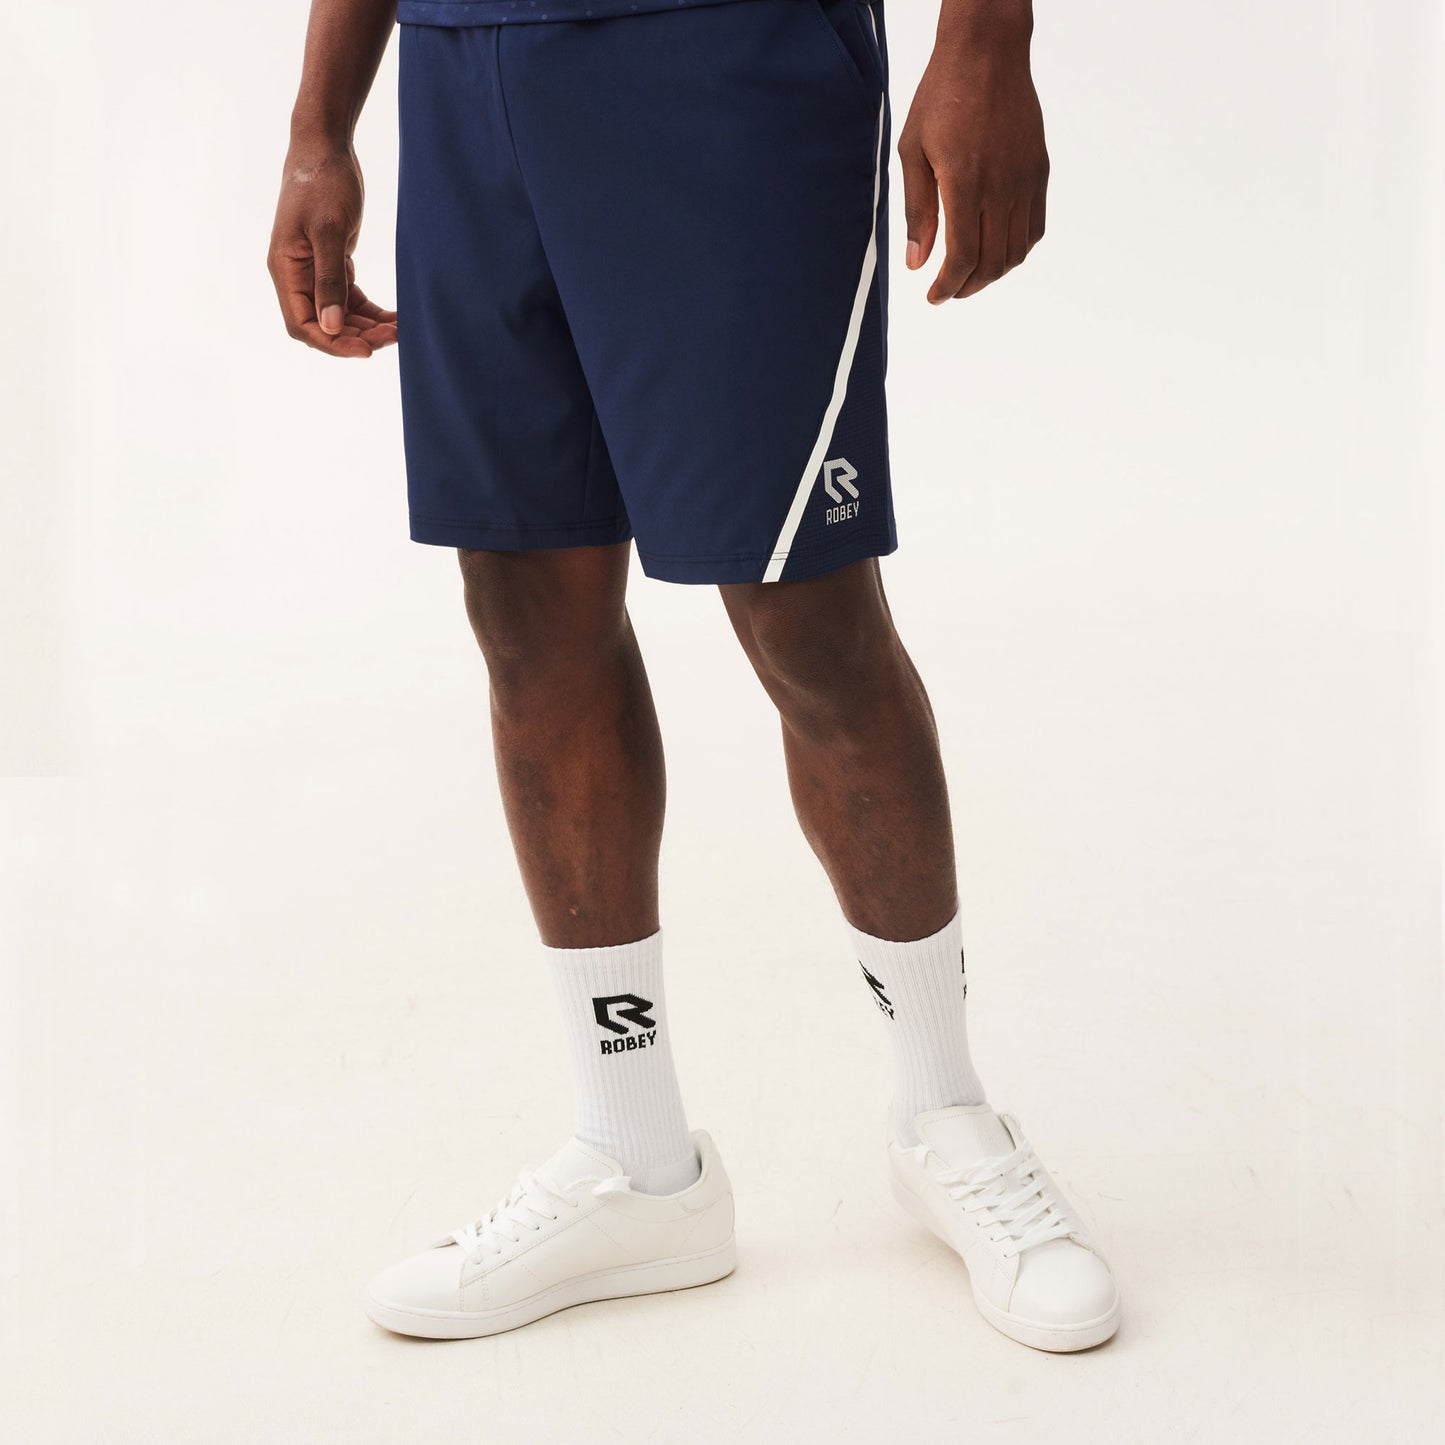 Robey Grip Men's 9-Inch Tennis Shorts Dark Blue (1)